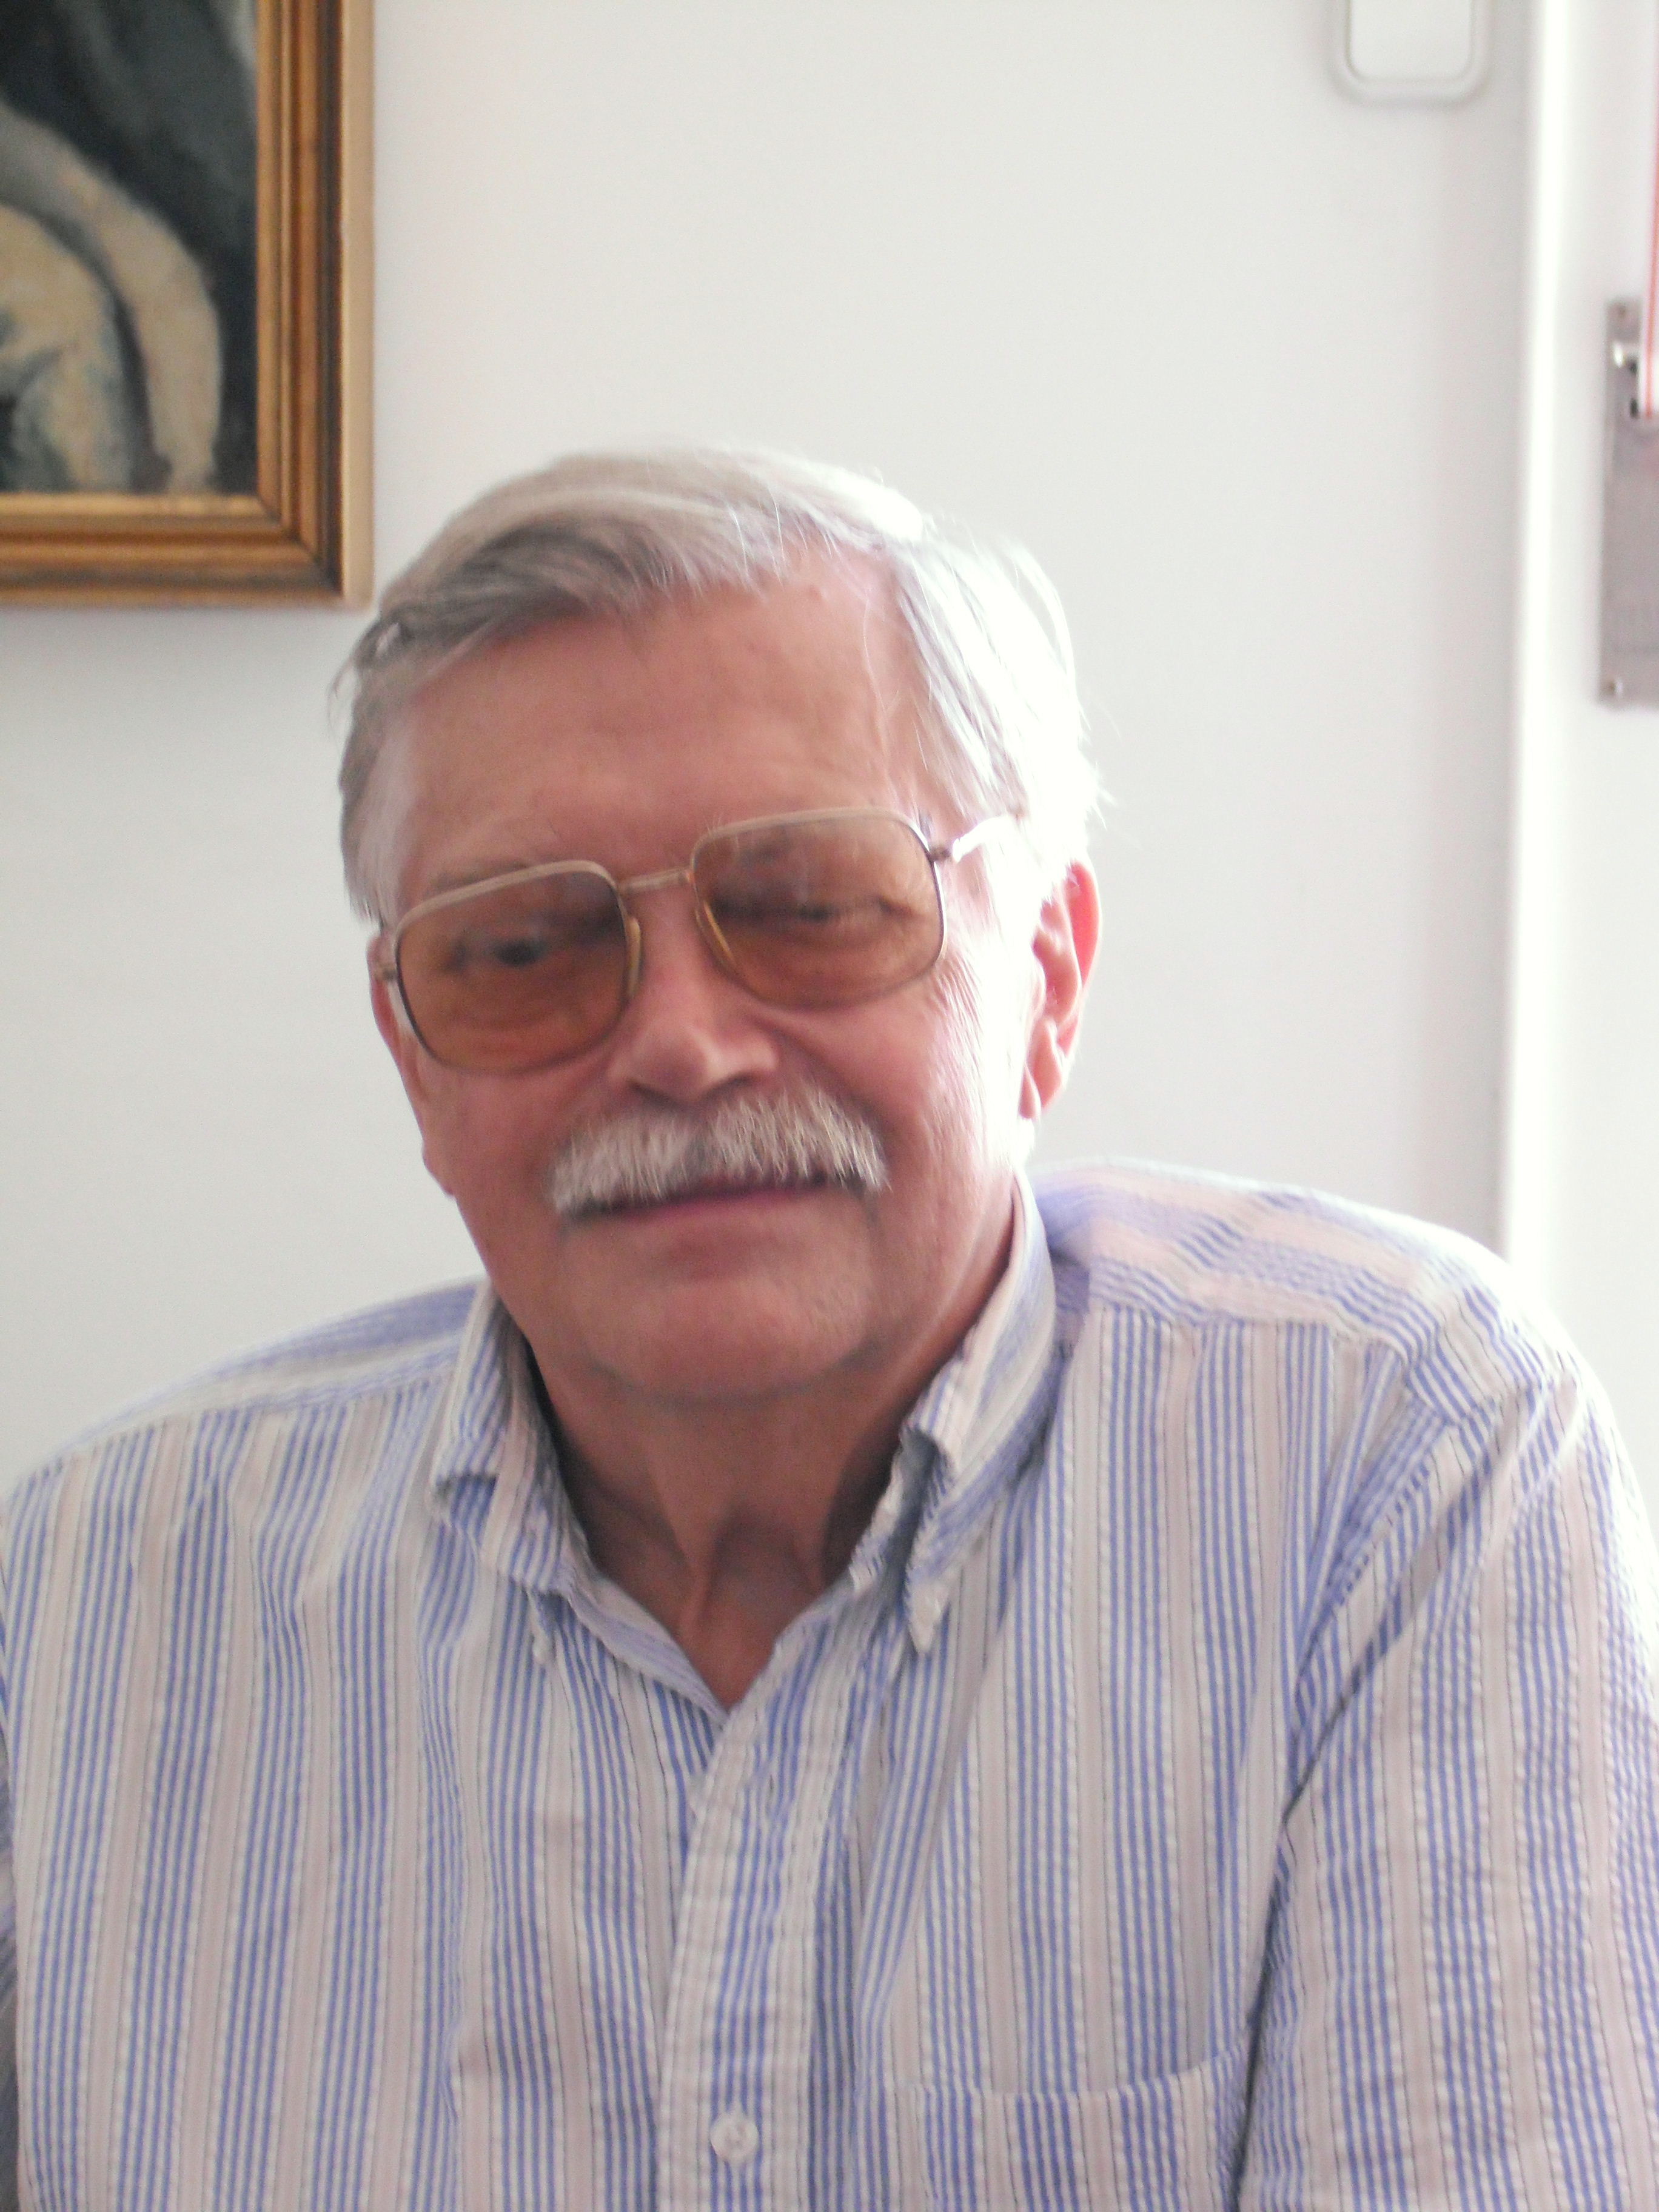 Szelényi Iván, 2009.